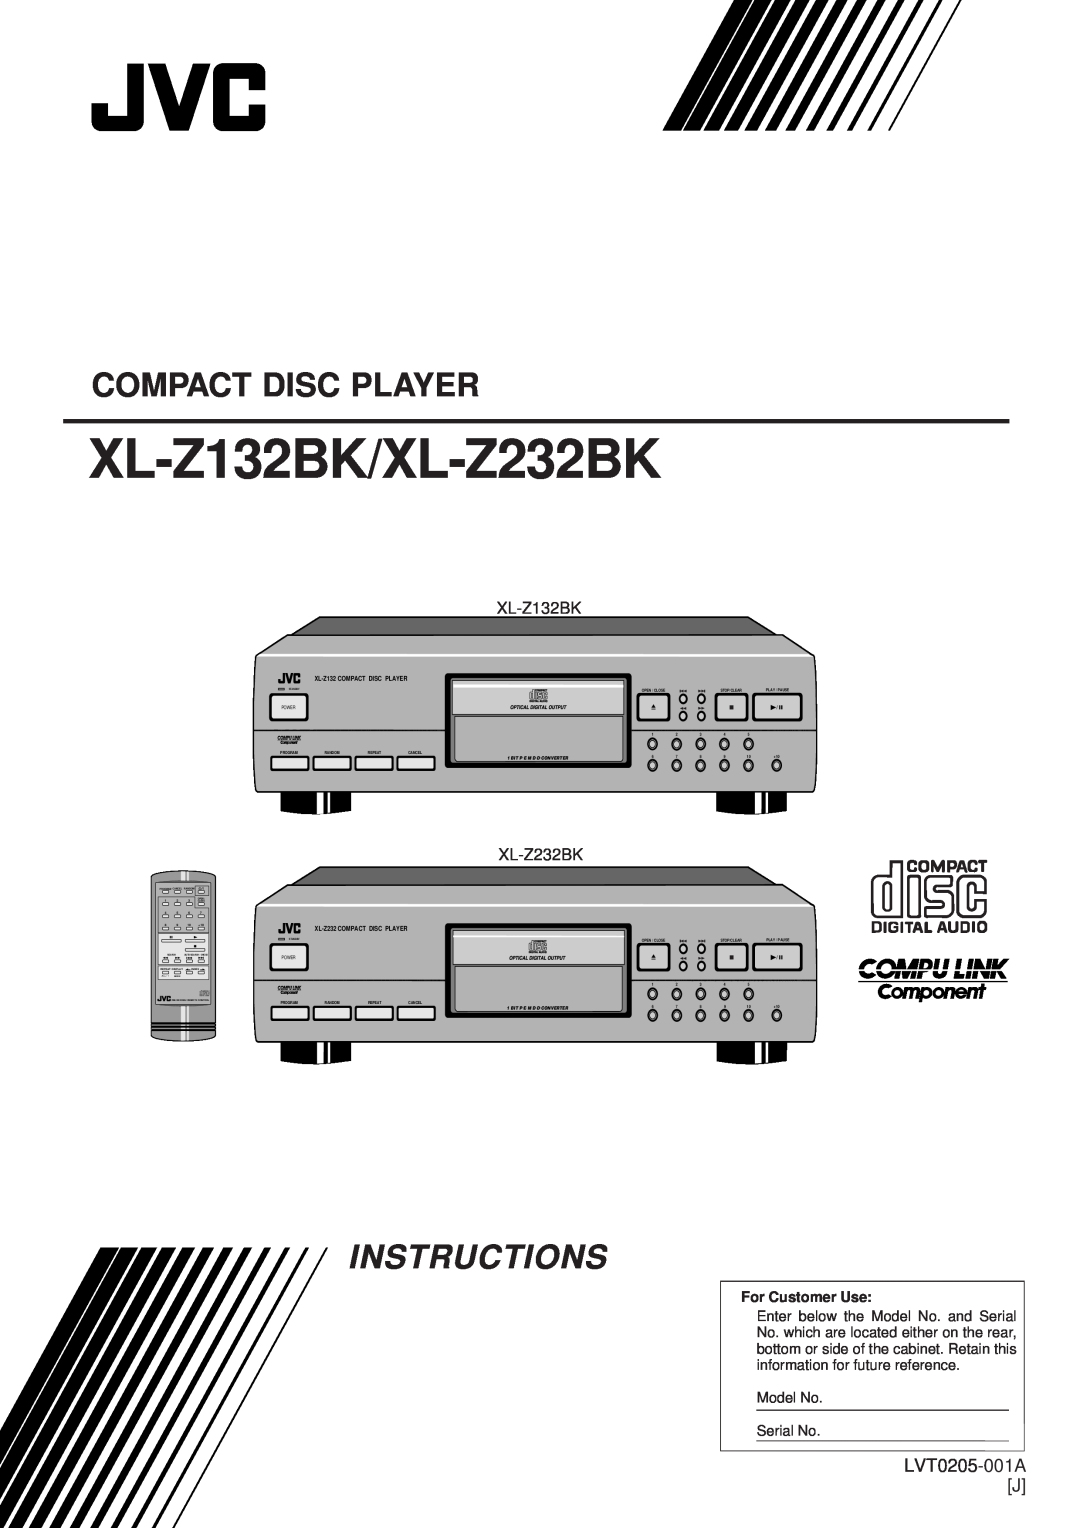 JVC manual Compact Disc Player, LVT0205-001AJ, XL-Z132BK/XL-Z232BK, Instructions, XL-Z132COMPACT DISC PLAYER, Power 